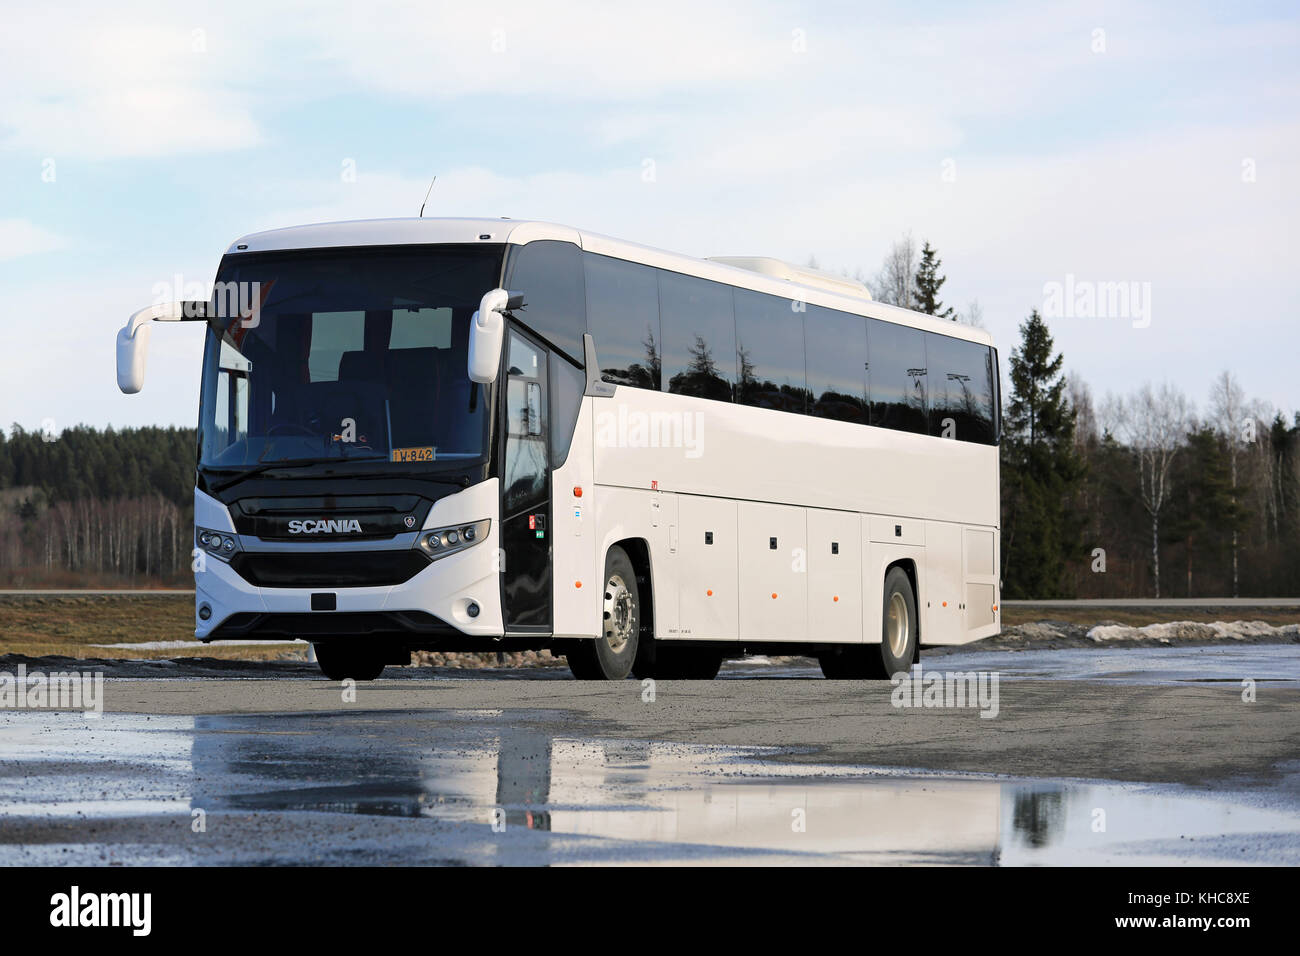 Mariehamn, Finnland - 12. März 2017: Neue, weiße Scania interlink Coach Bus auf nassem Asphalt Yard im frühen Frühling im Süden Finnlands geparkt. Stockfoto